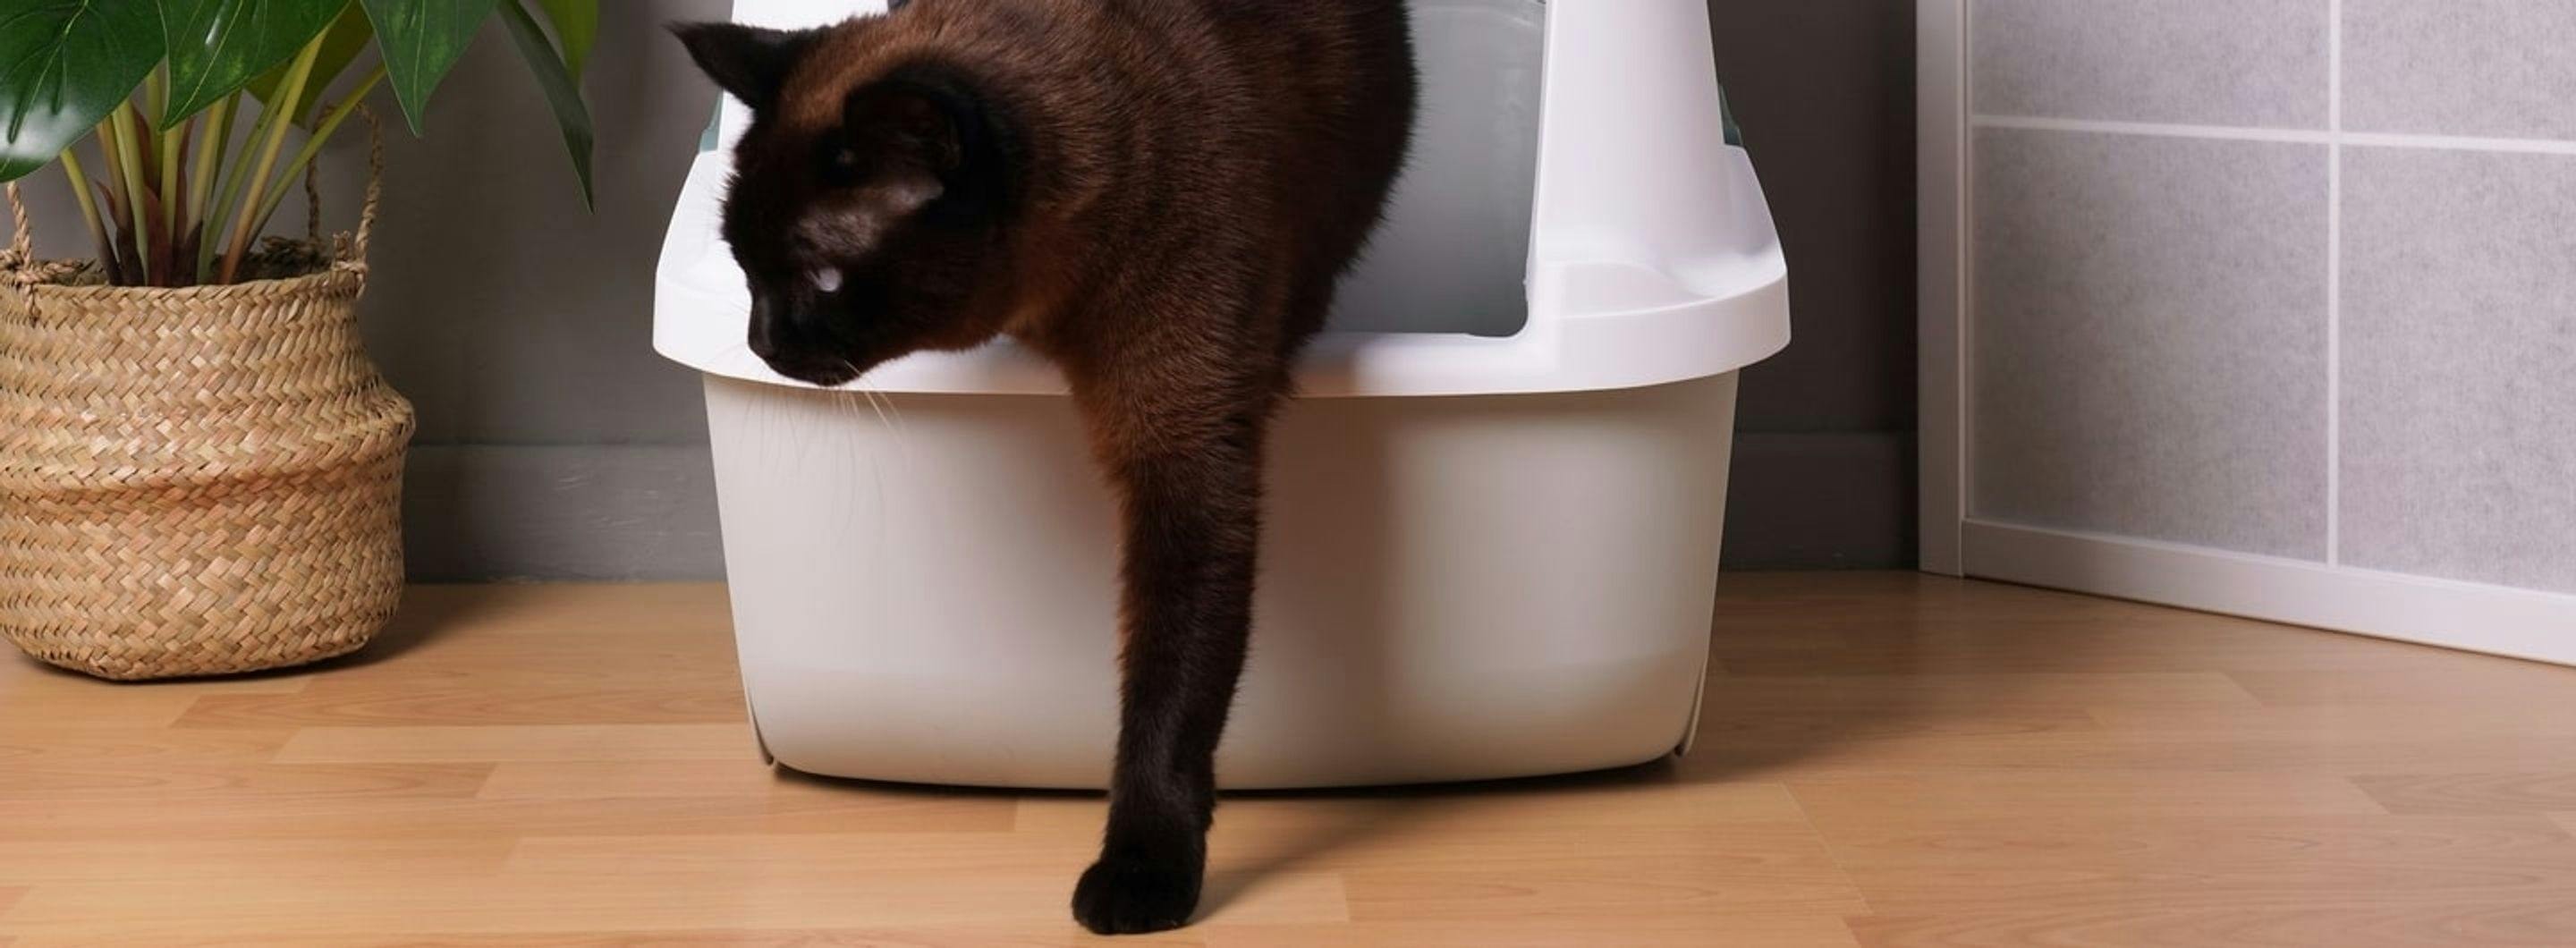 O que deve saber sobre a caixa de areia para gatos: dicas para uma boa compra e uso adequado